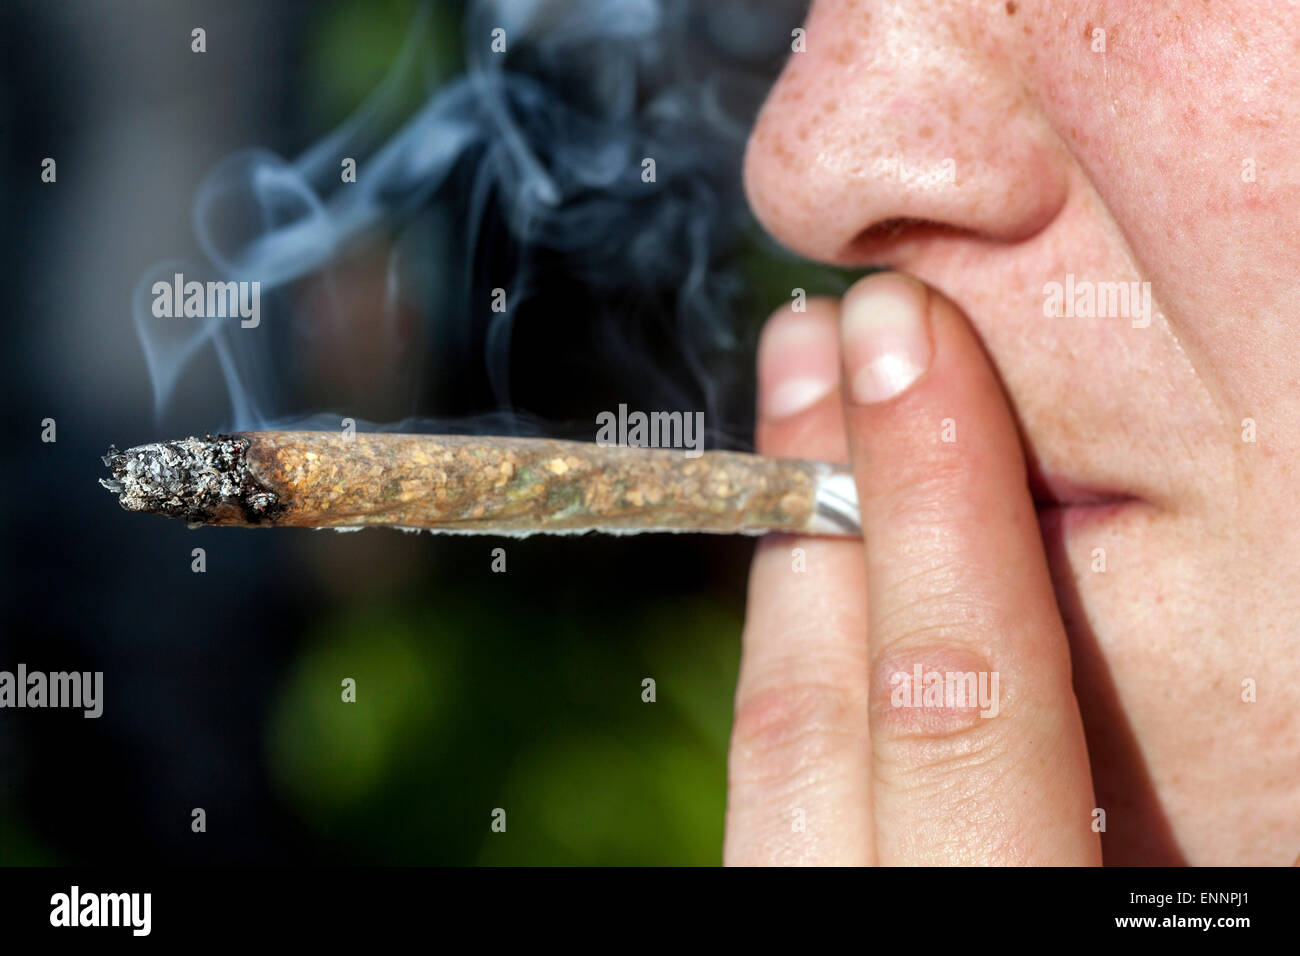 Close up, man smoking marijuana joint Stock Photo